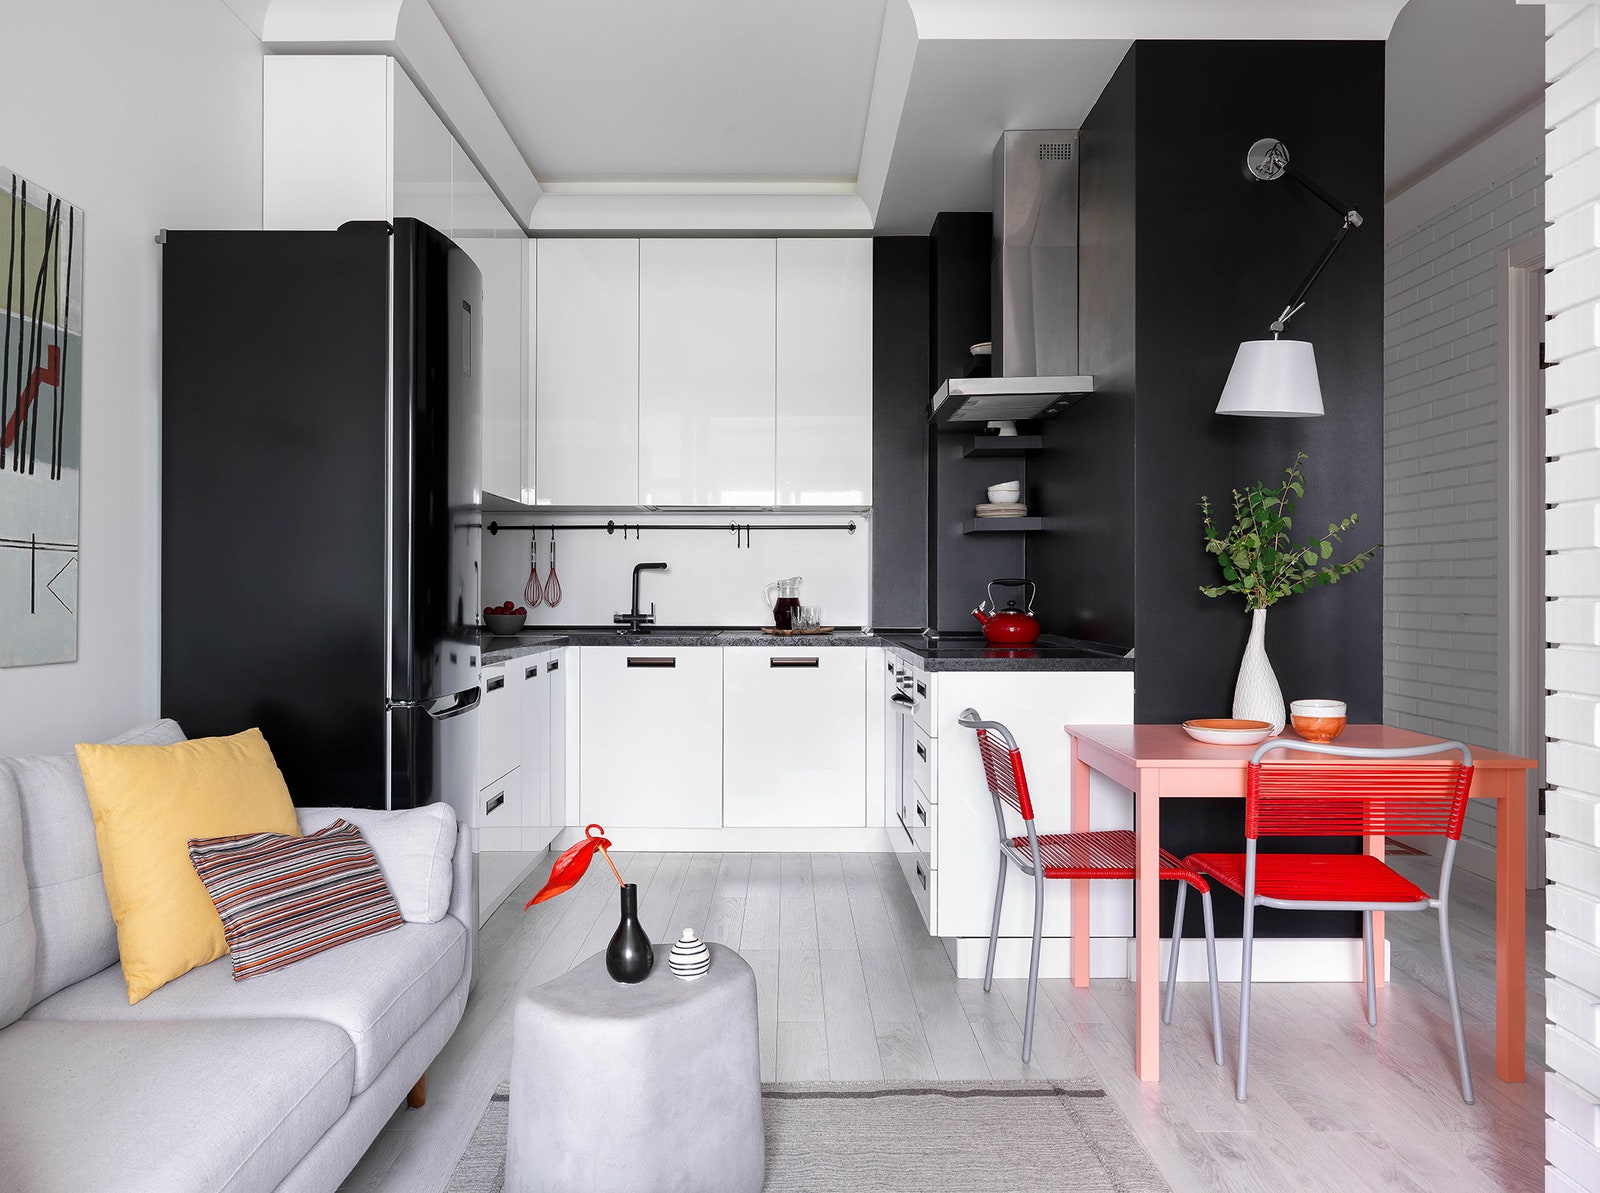 Кухня. Правая стена выкрашена грифельной краской. Кухня “Стильные кухни” обеденный стол IKEA шведские винтажные стулья...